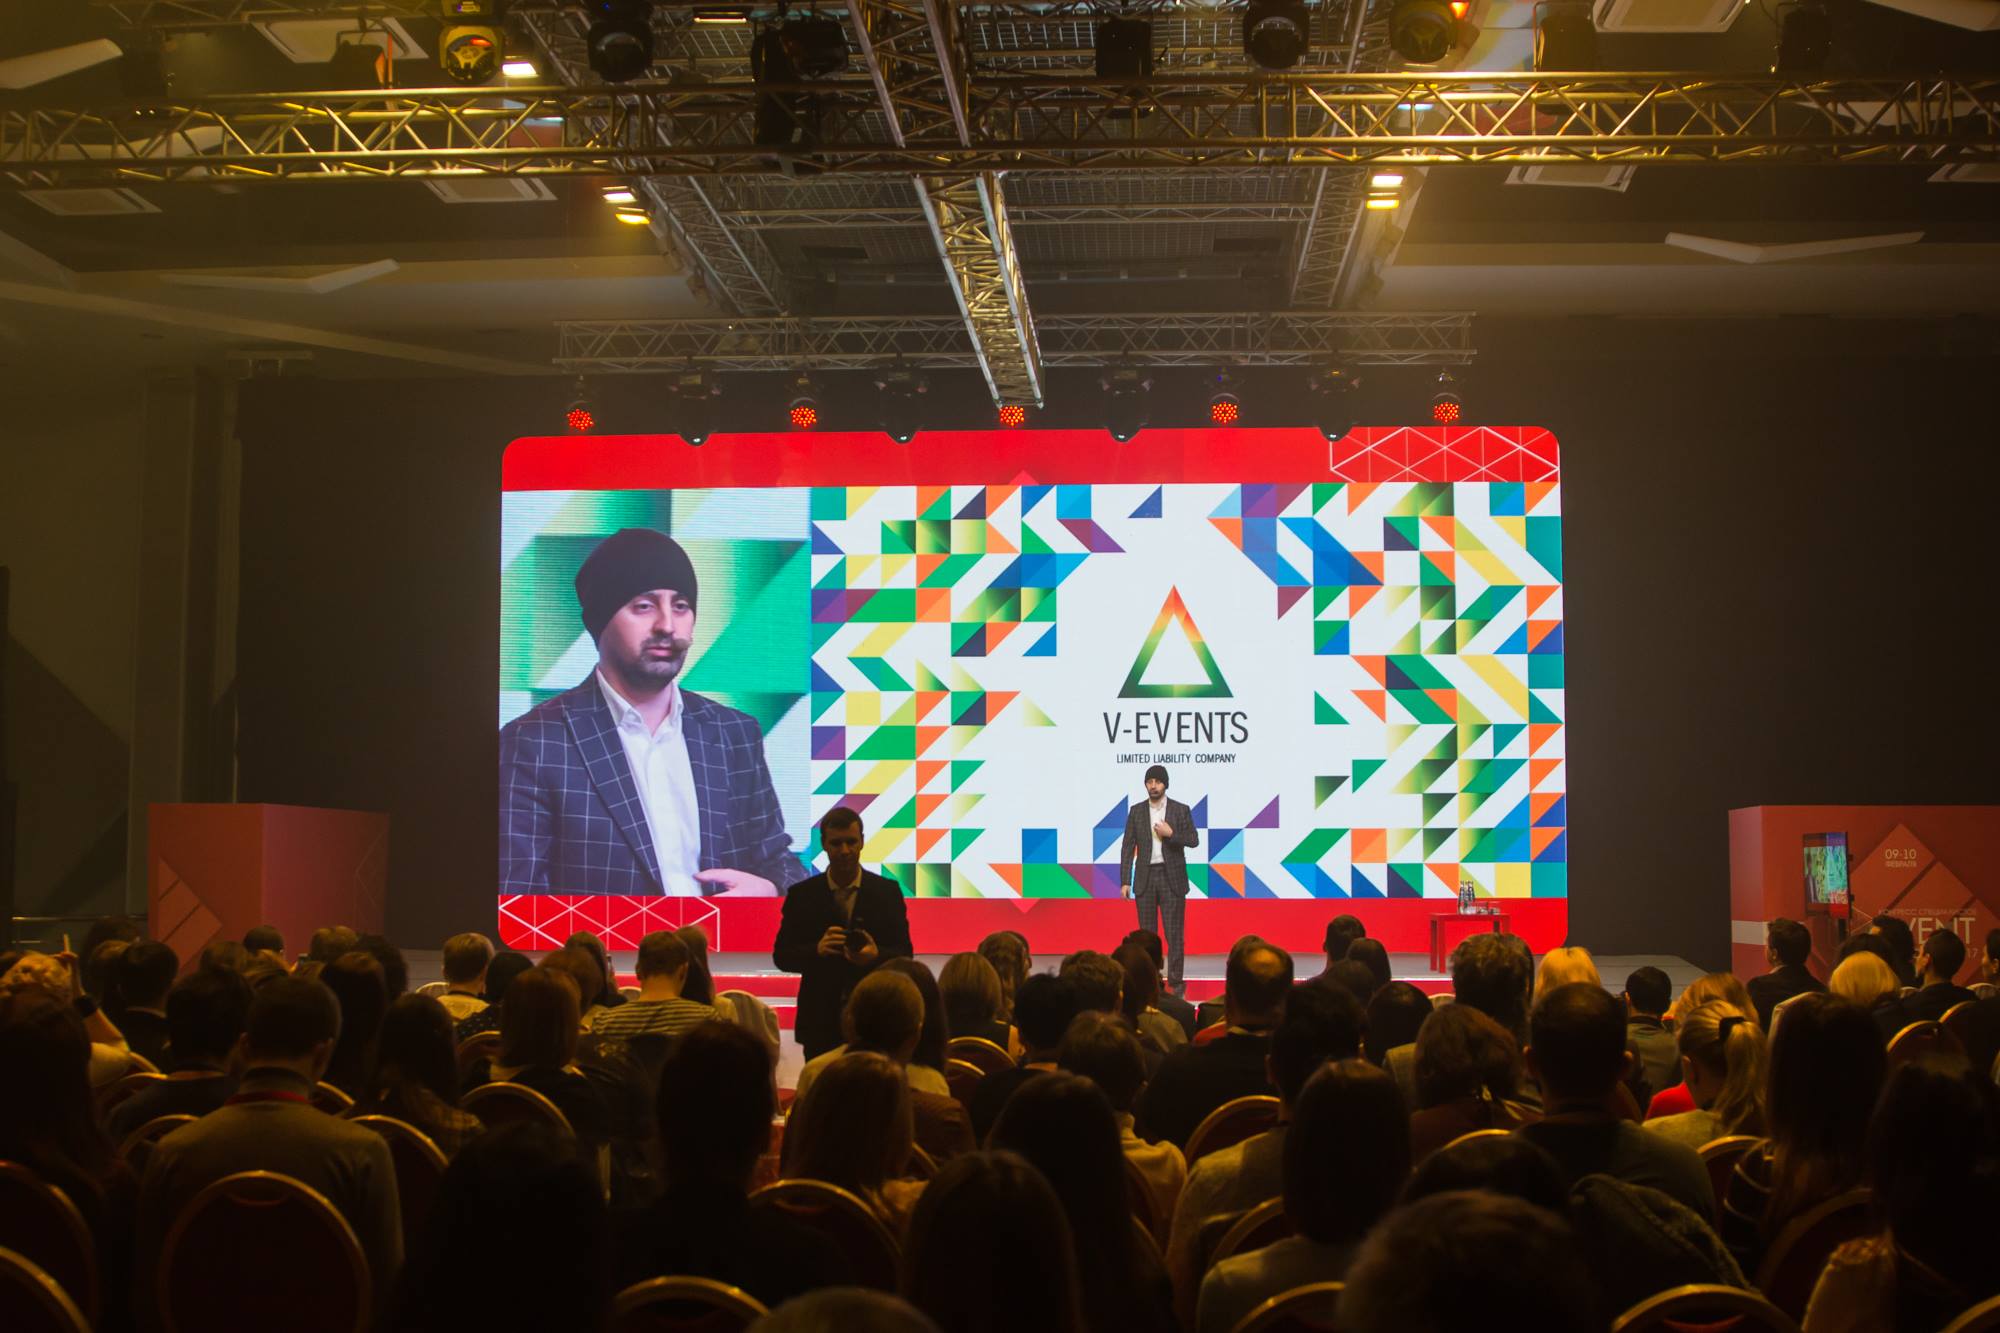 Конгресс специалистов event-индустрии состоялся в Екатеринбурге